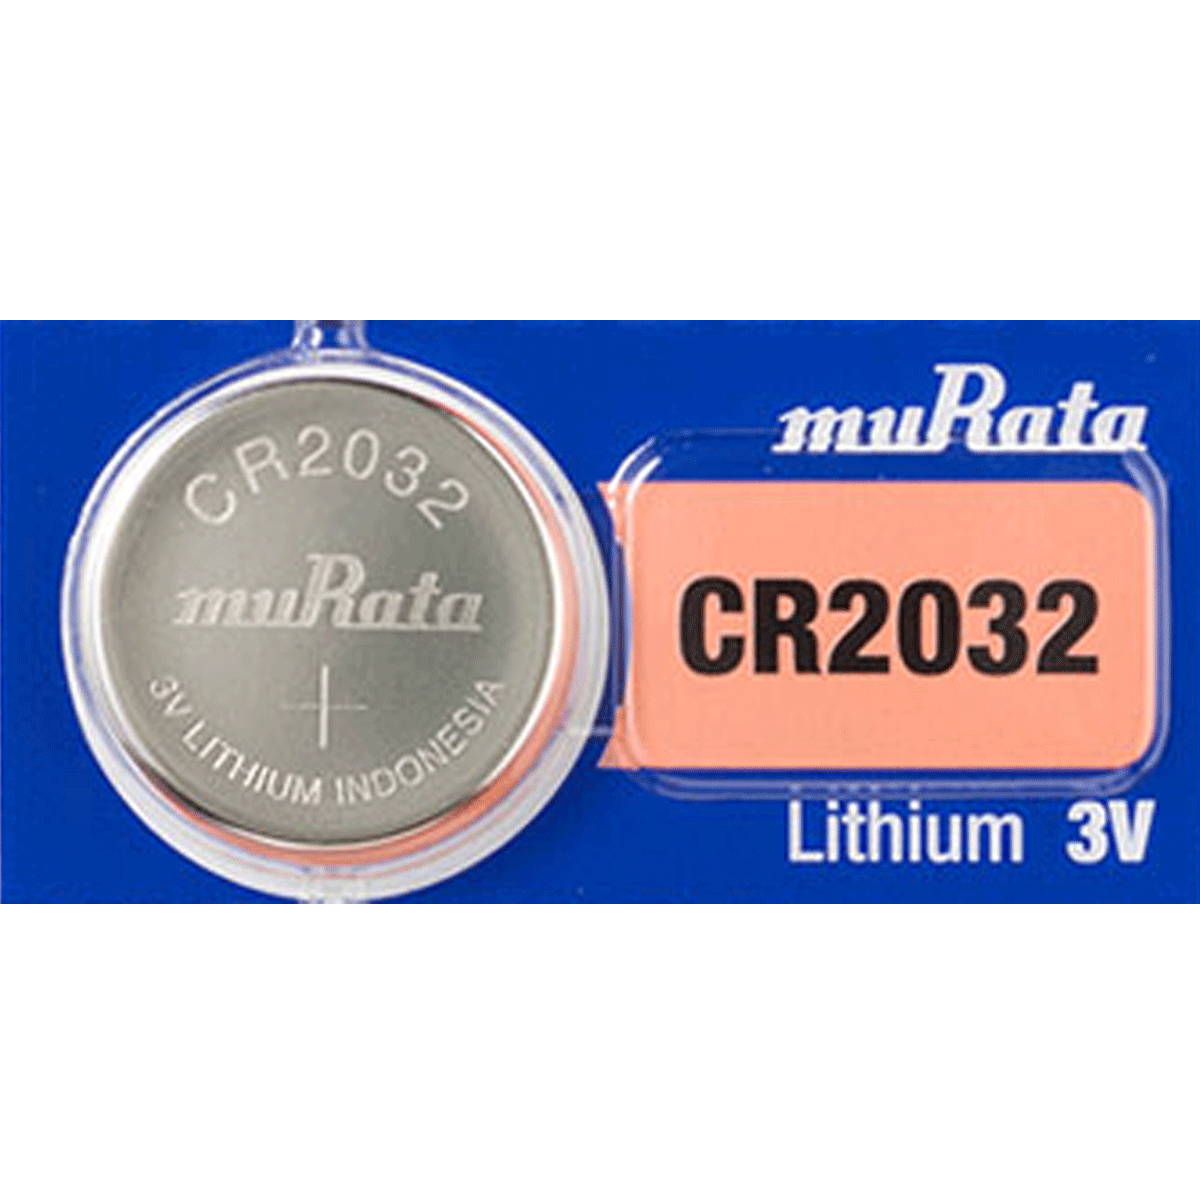 25 CR2032 New Energy Lithium 3V Batteries Size CR2032 5 PER Blister